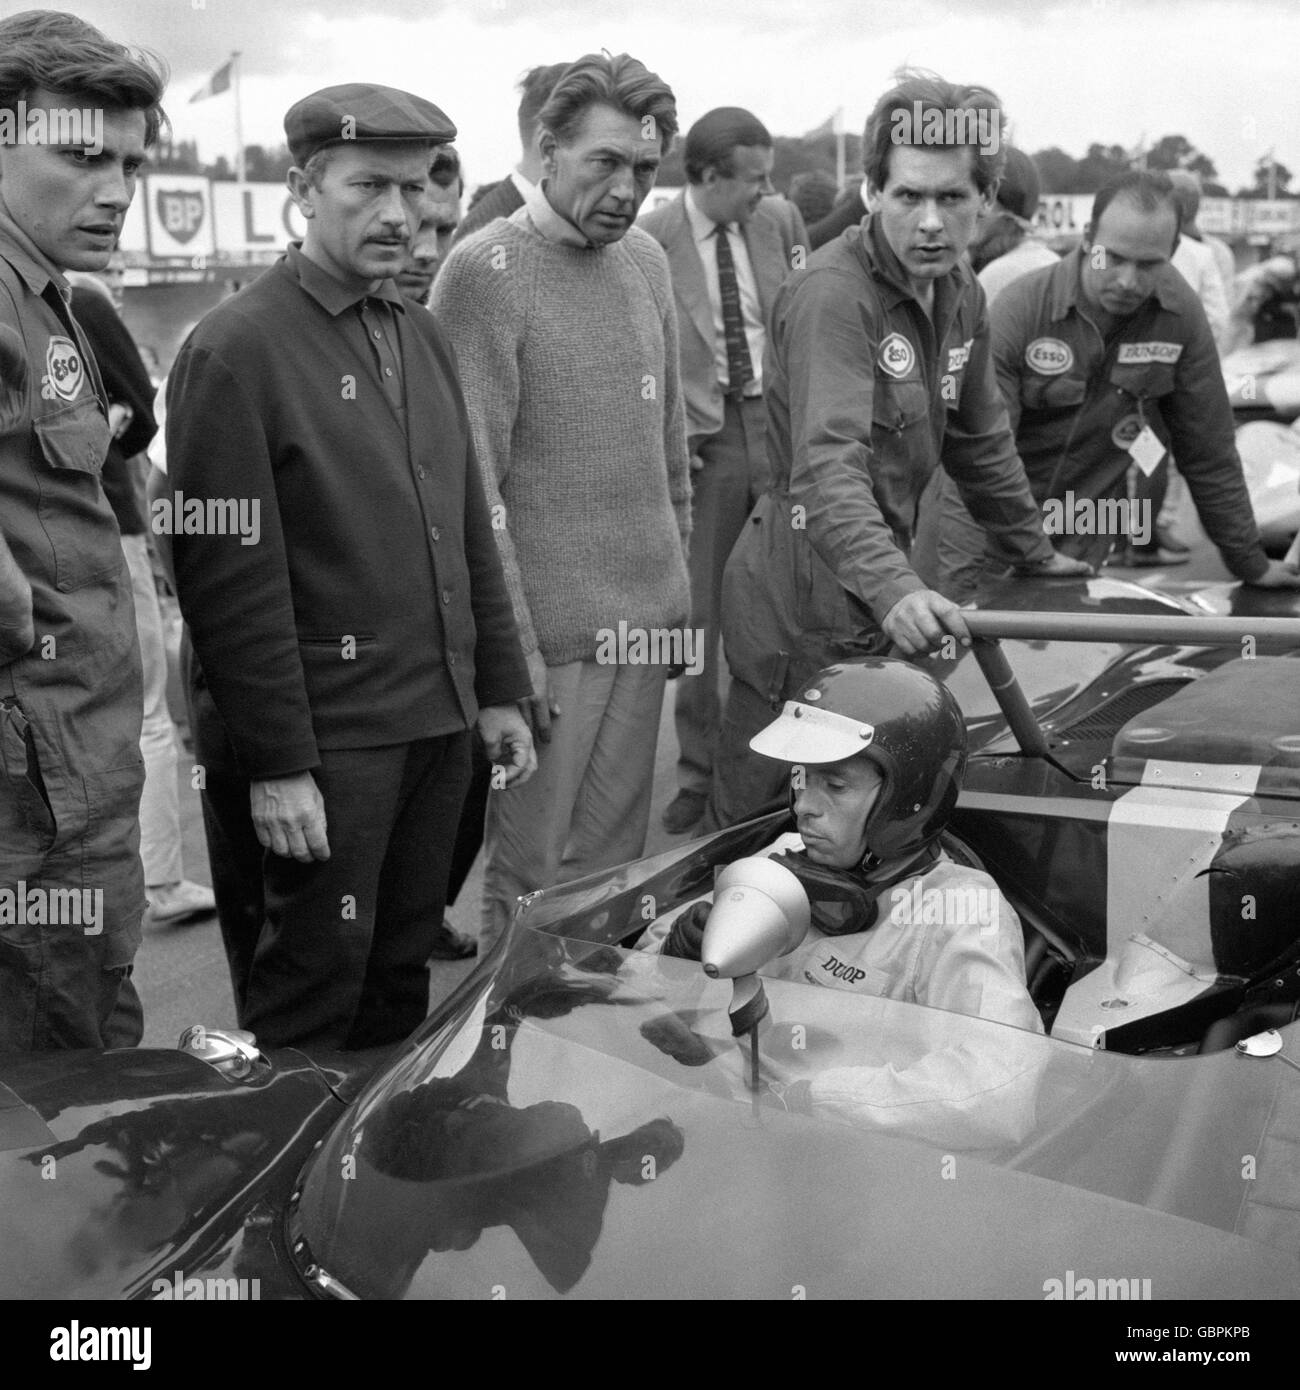 Colin Chapman, patron de l'équipe Lotus, à gauche avec une casquette plate,  a une expression de verrue pour égaler celle du nouveau champion du monde du  Grand Prix Jim Clark sur la